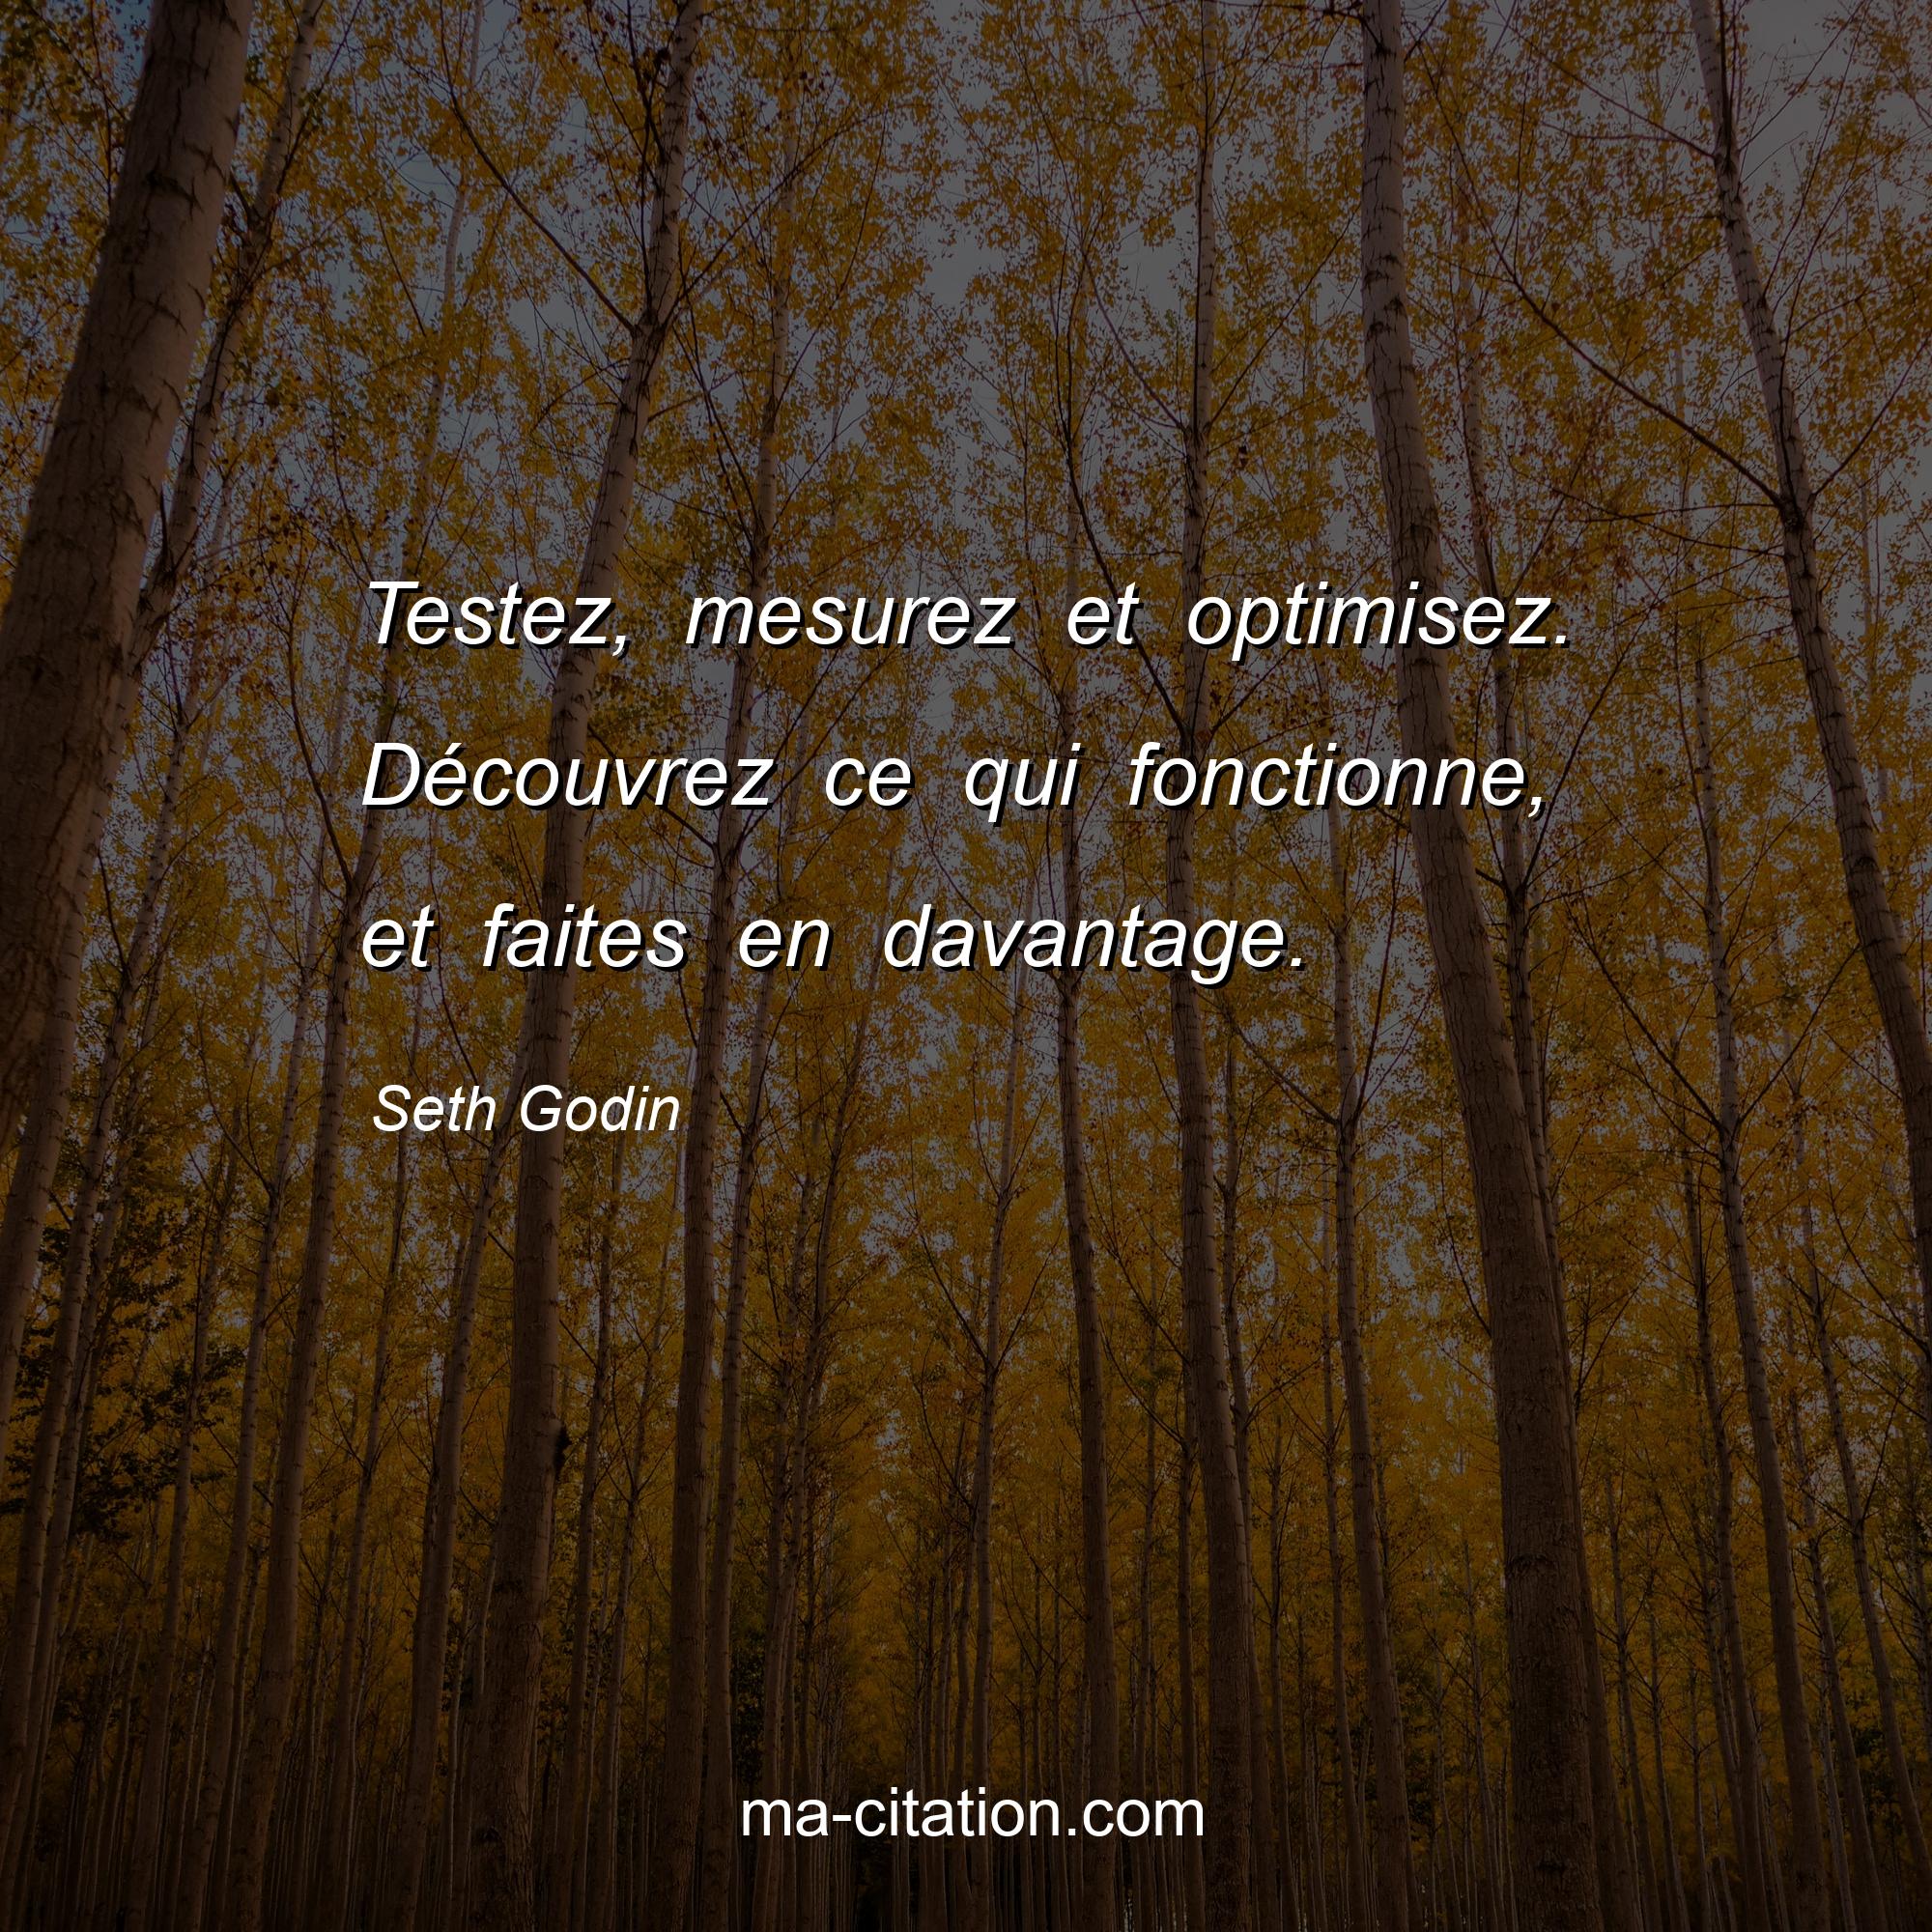 Seth Godin : Testez, mesurez et optimisez. Découvrez ce qui fonctionne, et faites en davantage.